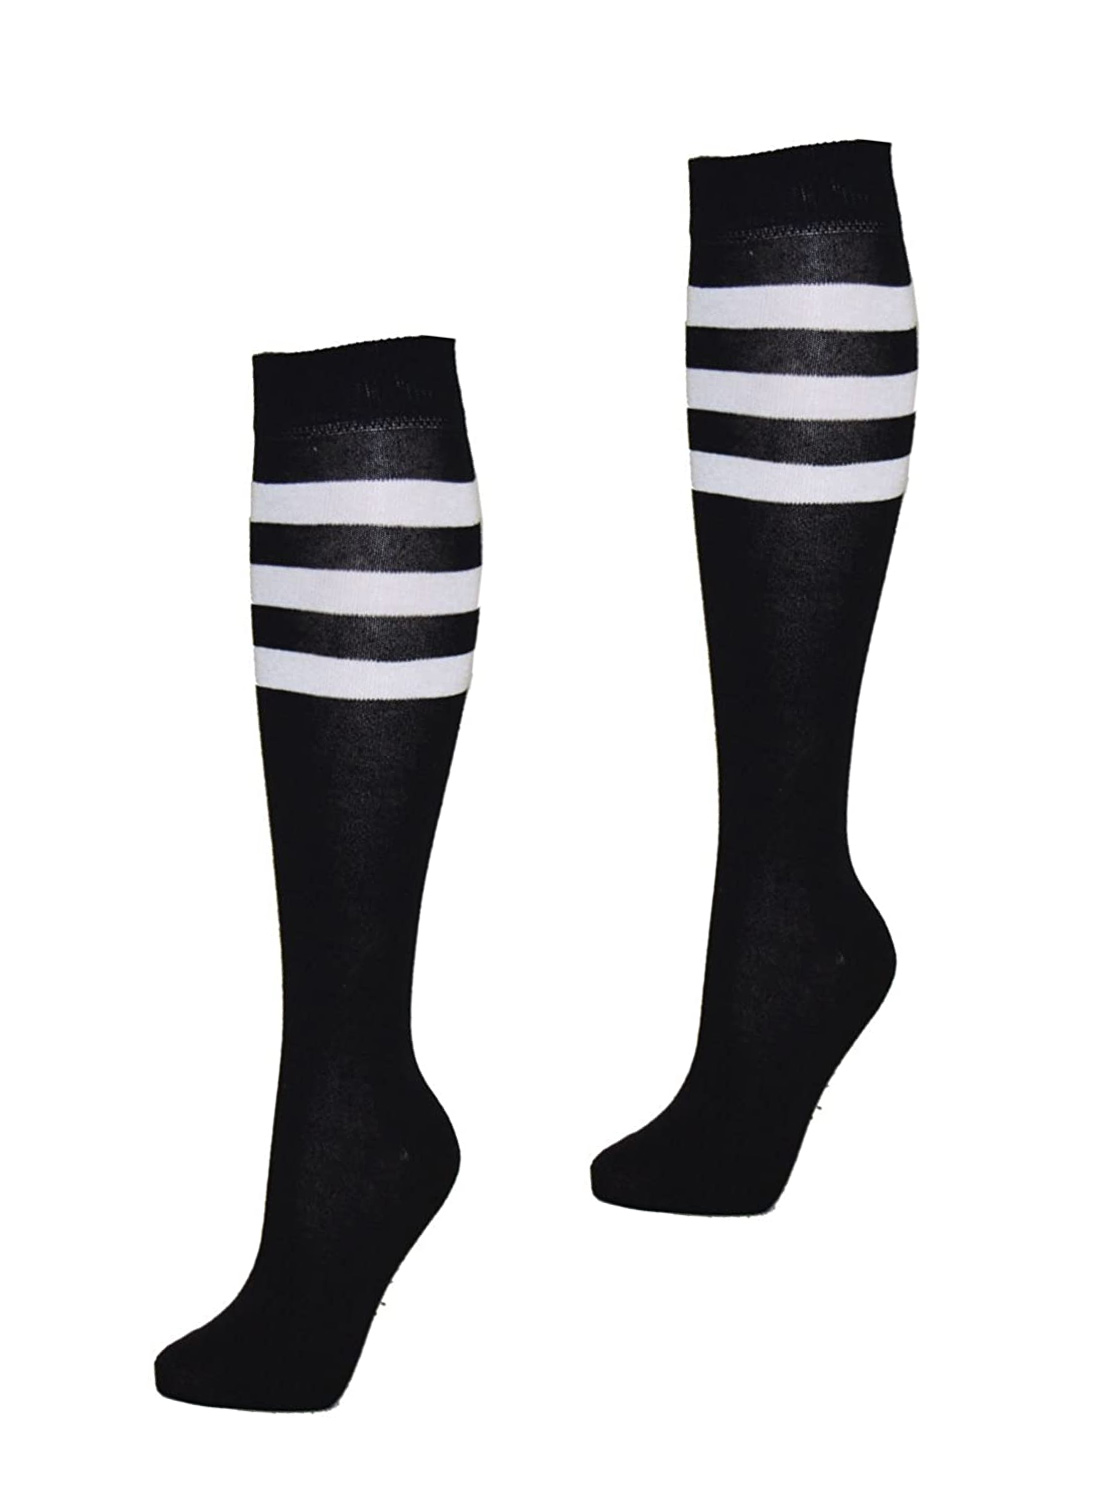 KH Sport Socks Black White Stripes